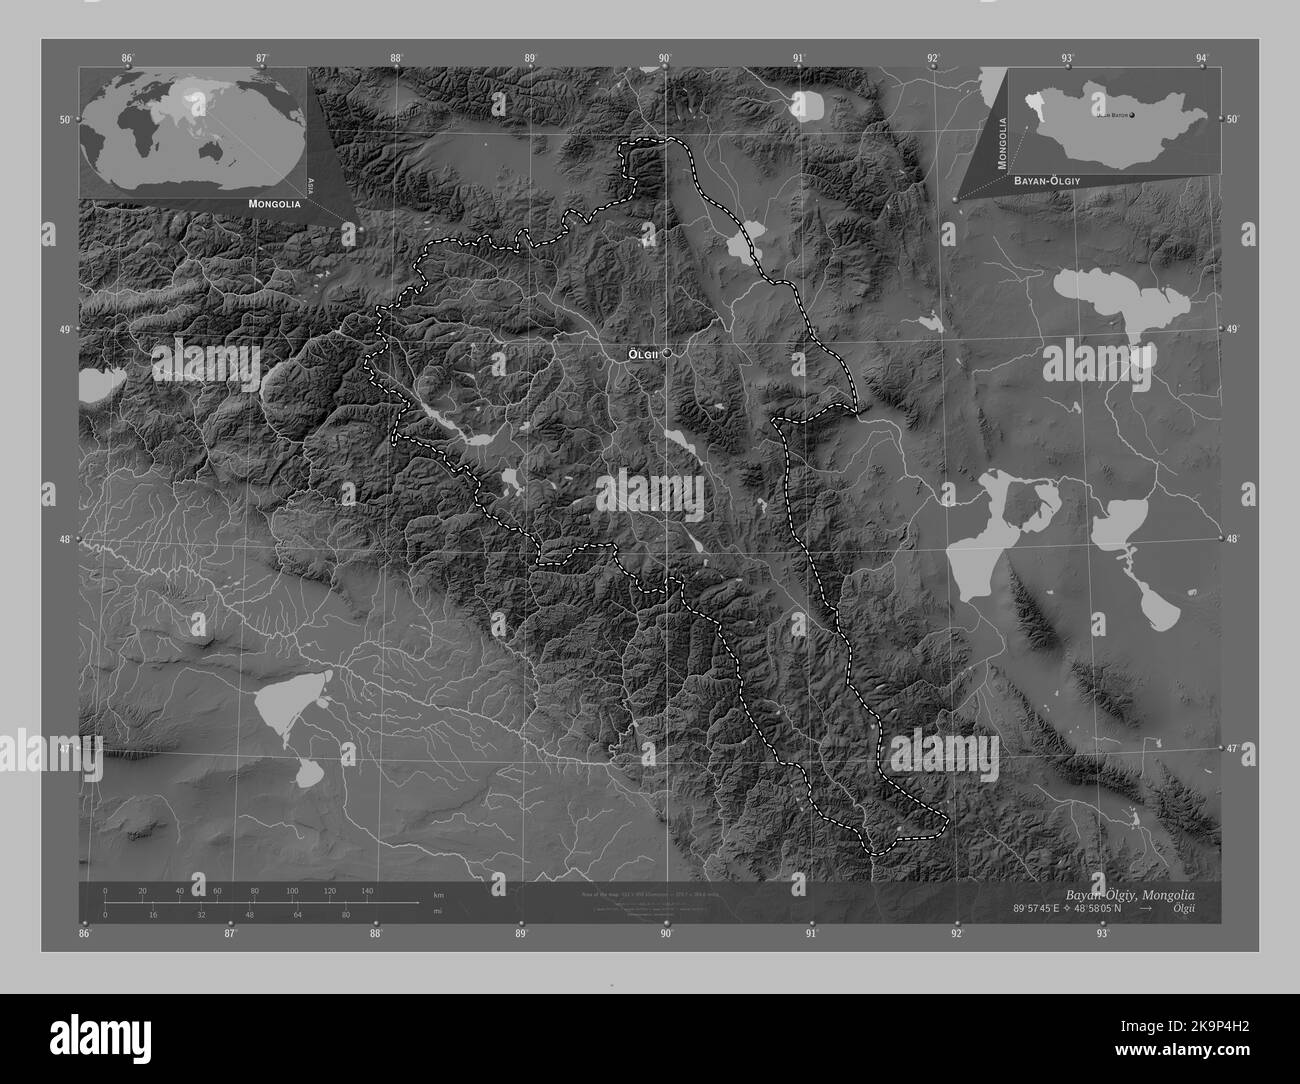 Bayan-Olgiy, provincia della Mongolia. Mappa in scala di grigi con laghi e fiumi. Località e nomi delle principali città della regione. Angolo ausiliario Foto Stock